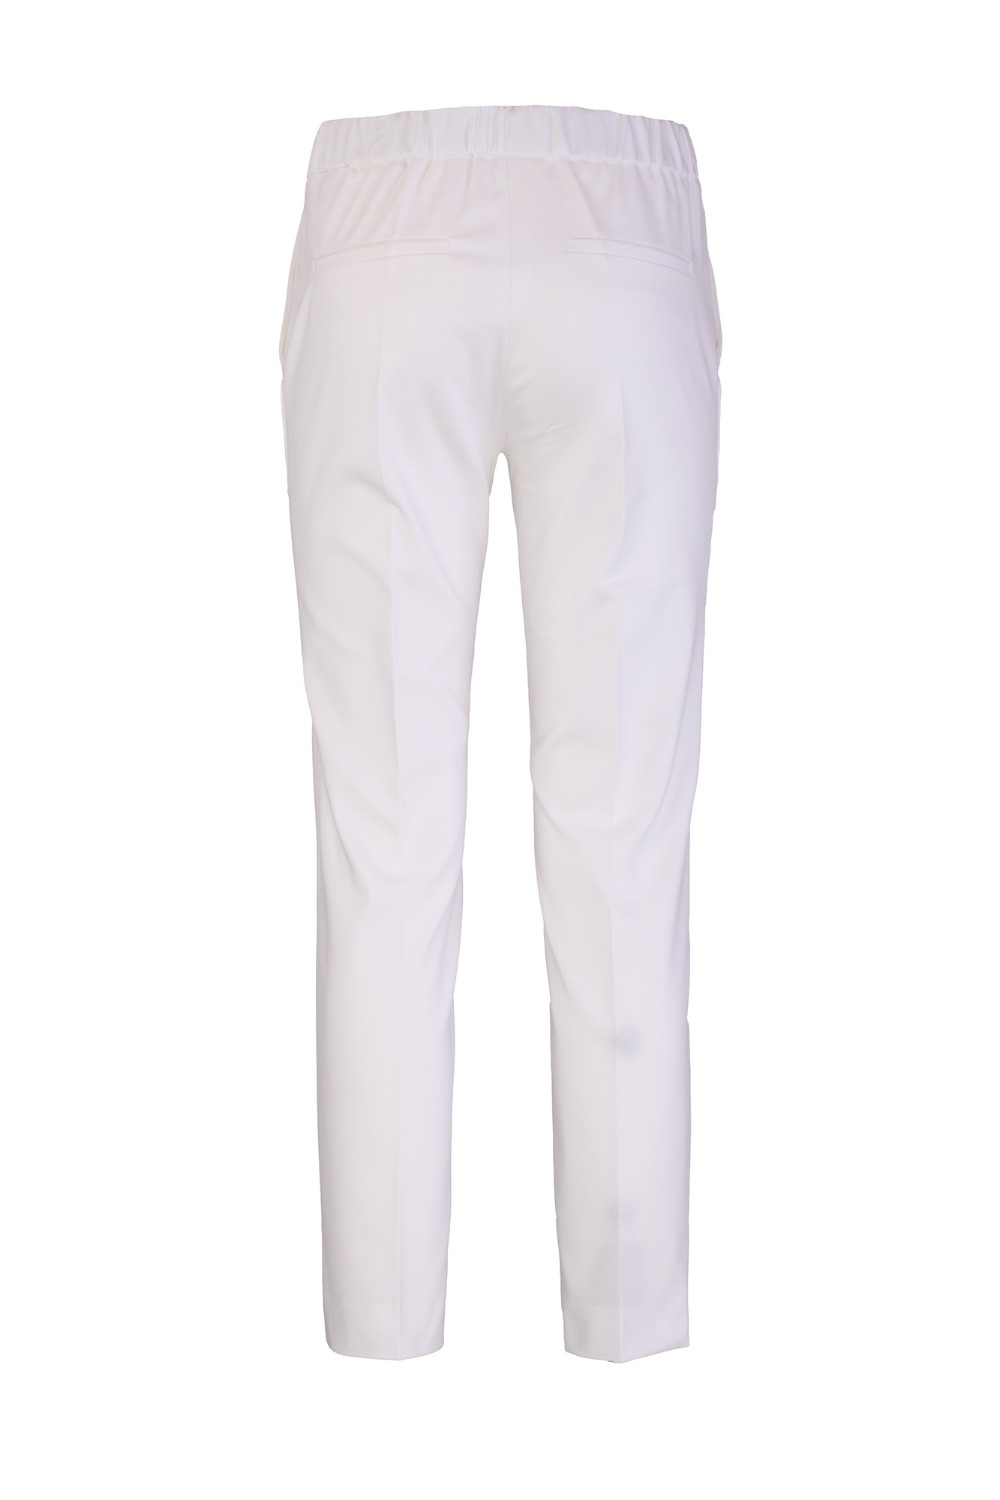 shop CLIPS  Pantalone: Clips pantaloni dritti misto cotone
Tasche america. 
Vita alta con elastico.
Composizione: 62% cotone, 33% poliestere, 5% elastan.. E220 9372-03 number 5364083